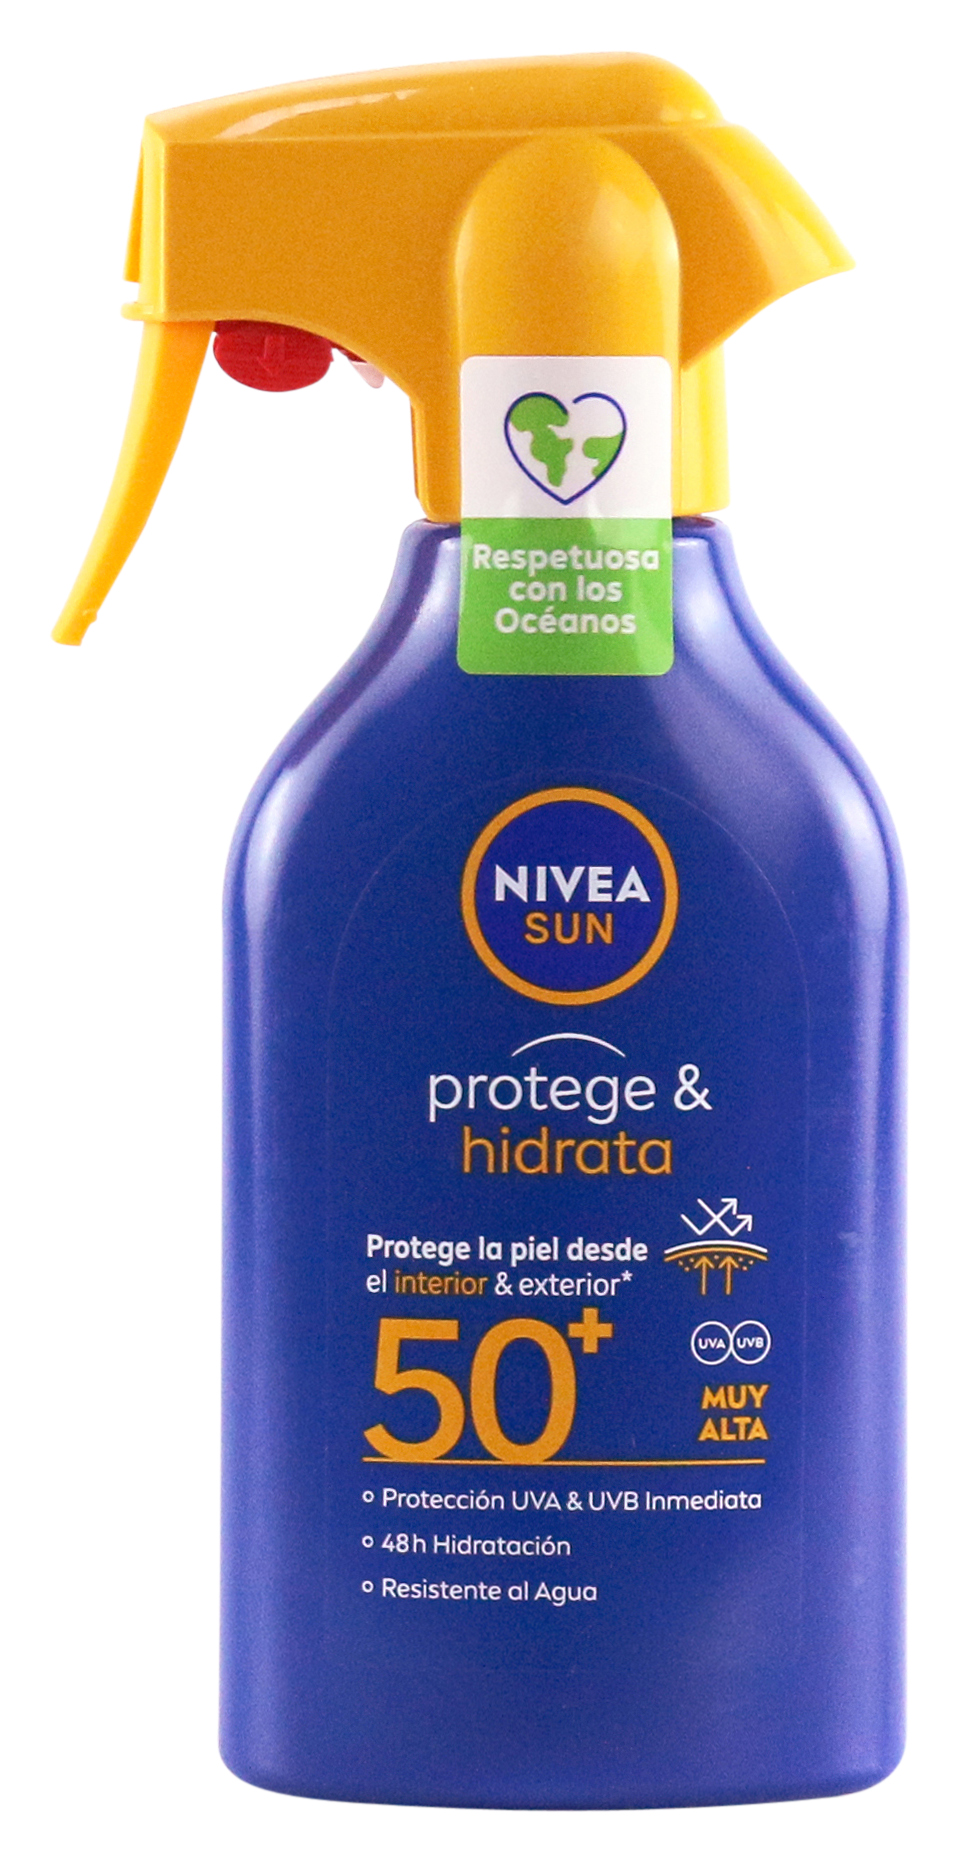 PROTEGE & HIDRATA SPF 50+